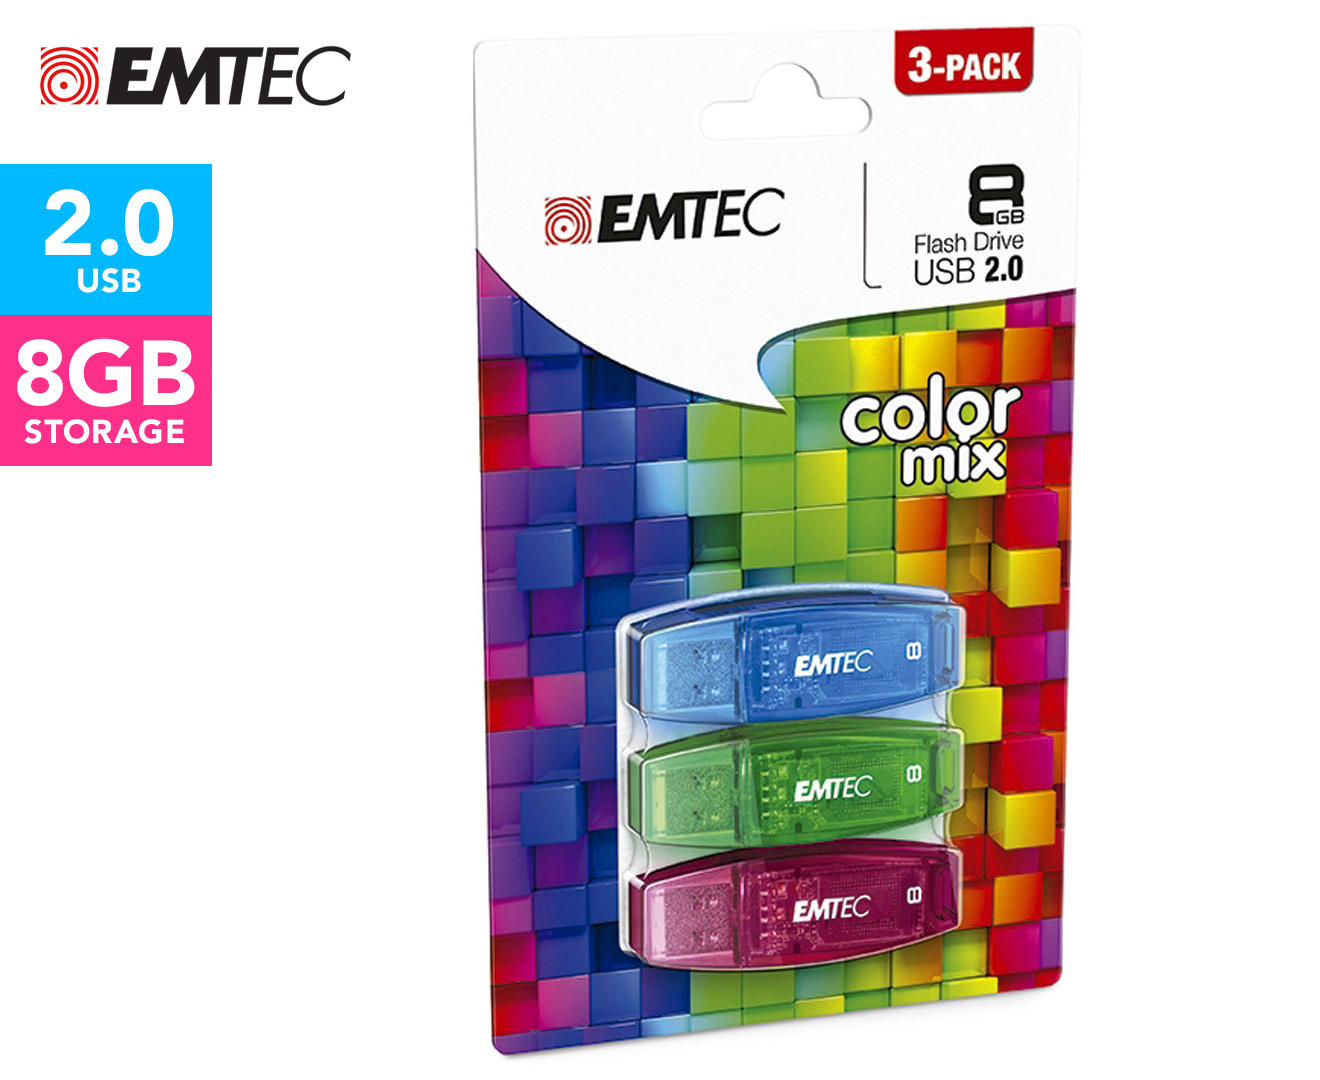 EMTEC C410 Color Mix USB 2.0 8GB Flash Drive 3-Pack - Blue/Green/Plum